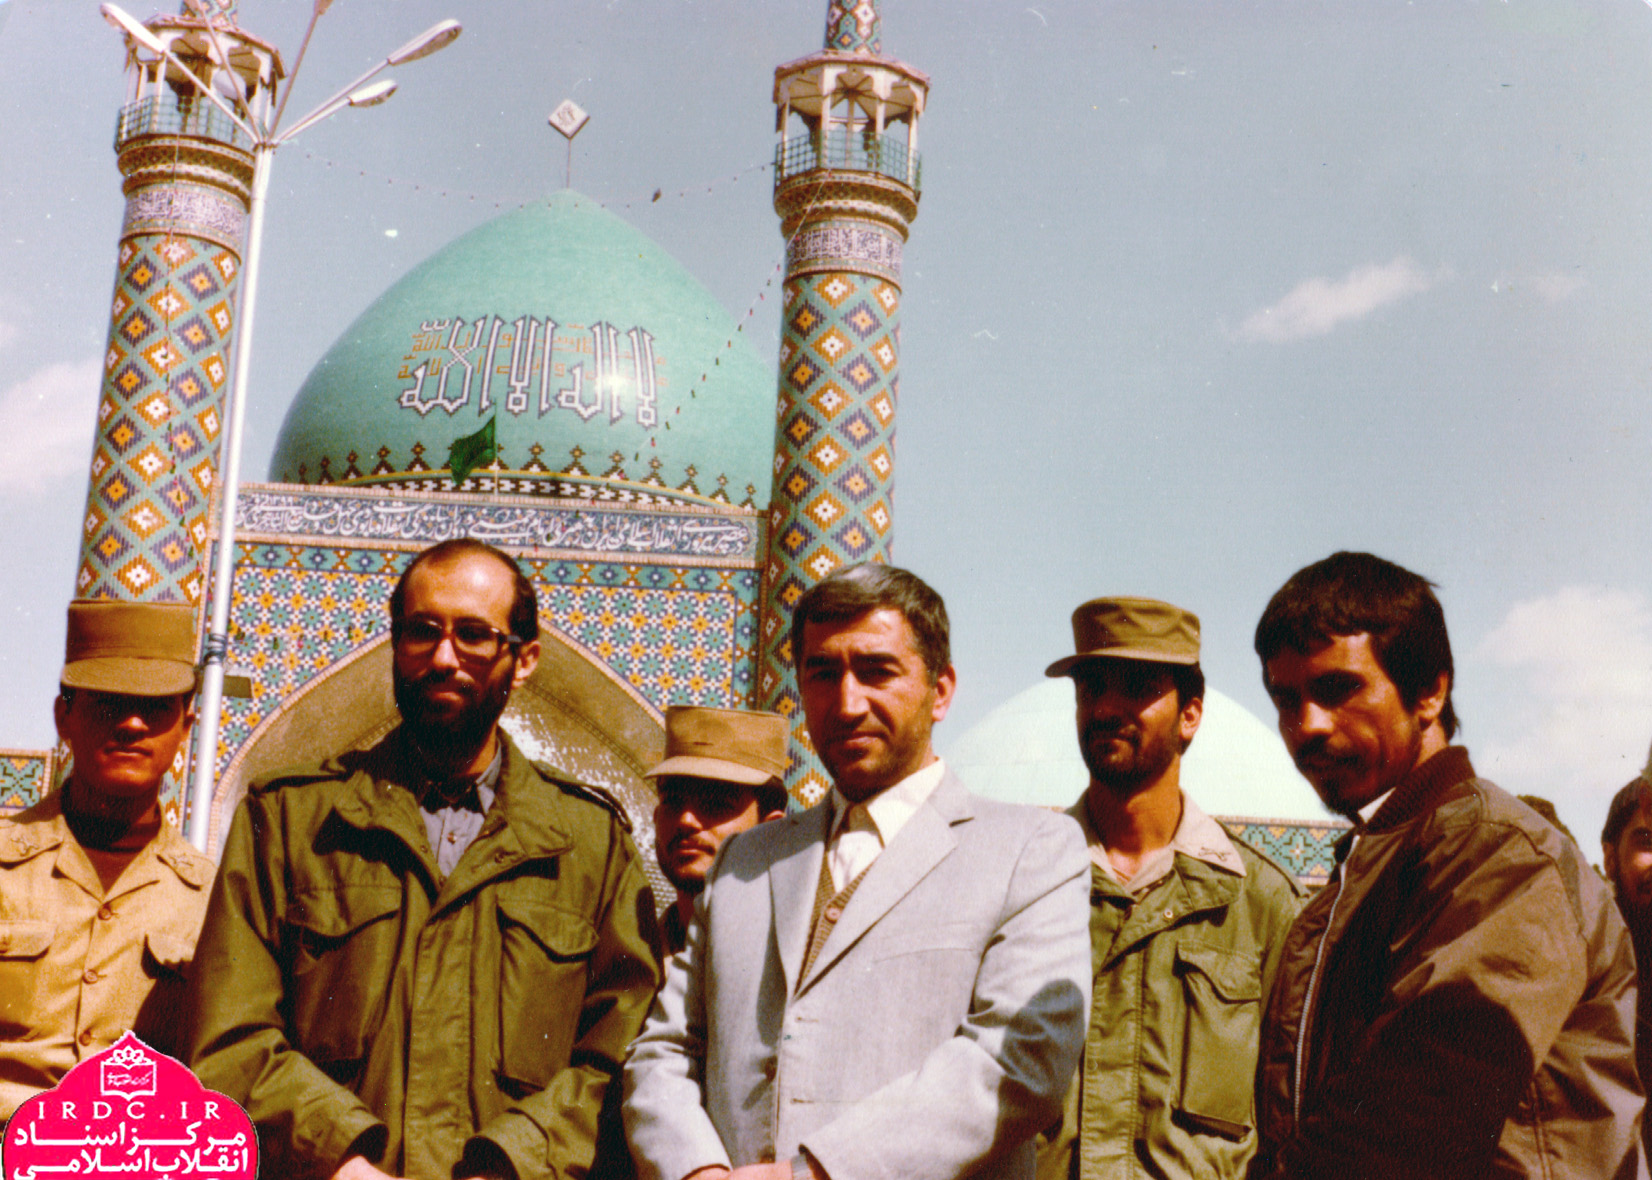 محمدرضا اعتمادیان در قاب تصویر